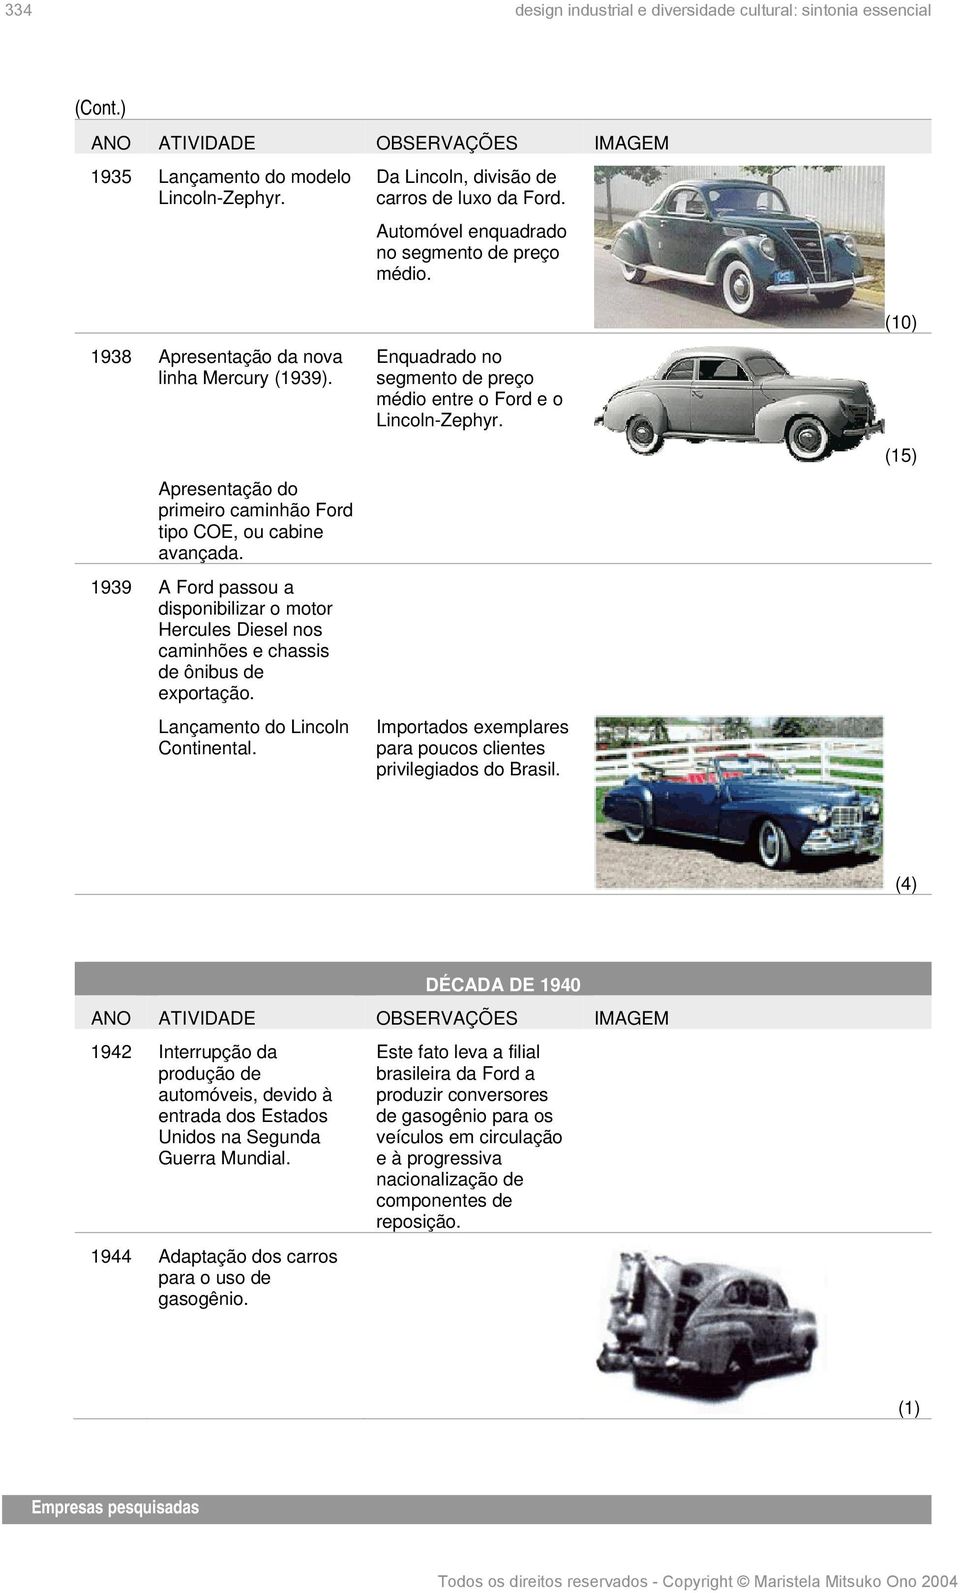 1939 A Ford passou a disponibilizar o motor Hercules Diesel nos caminhões e chassis de ônibus de exportação. Lançamento do Lincoln Continental.